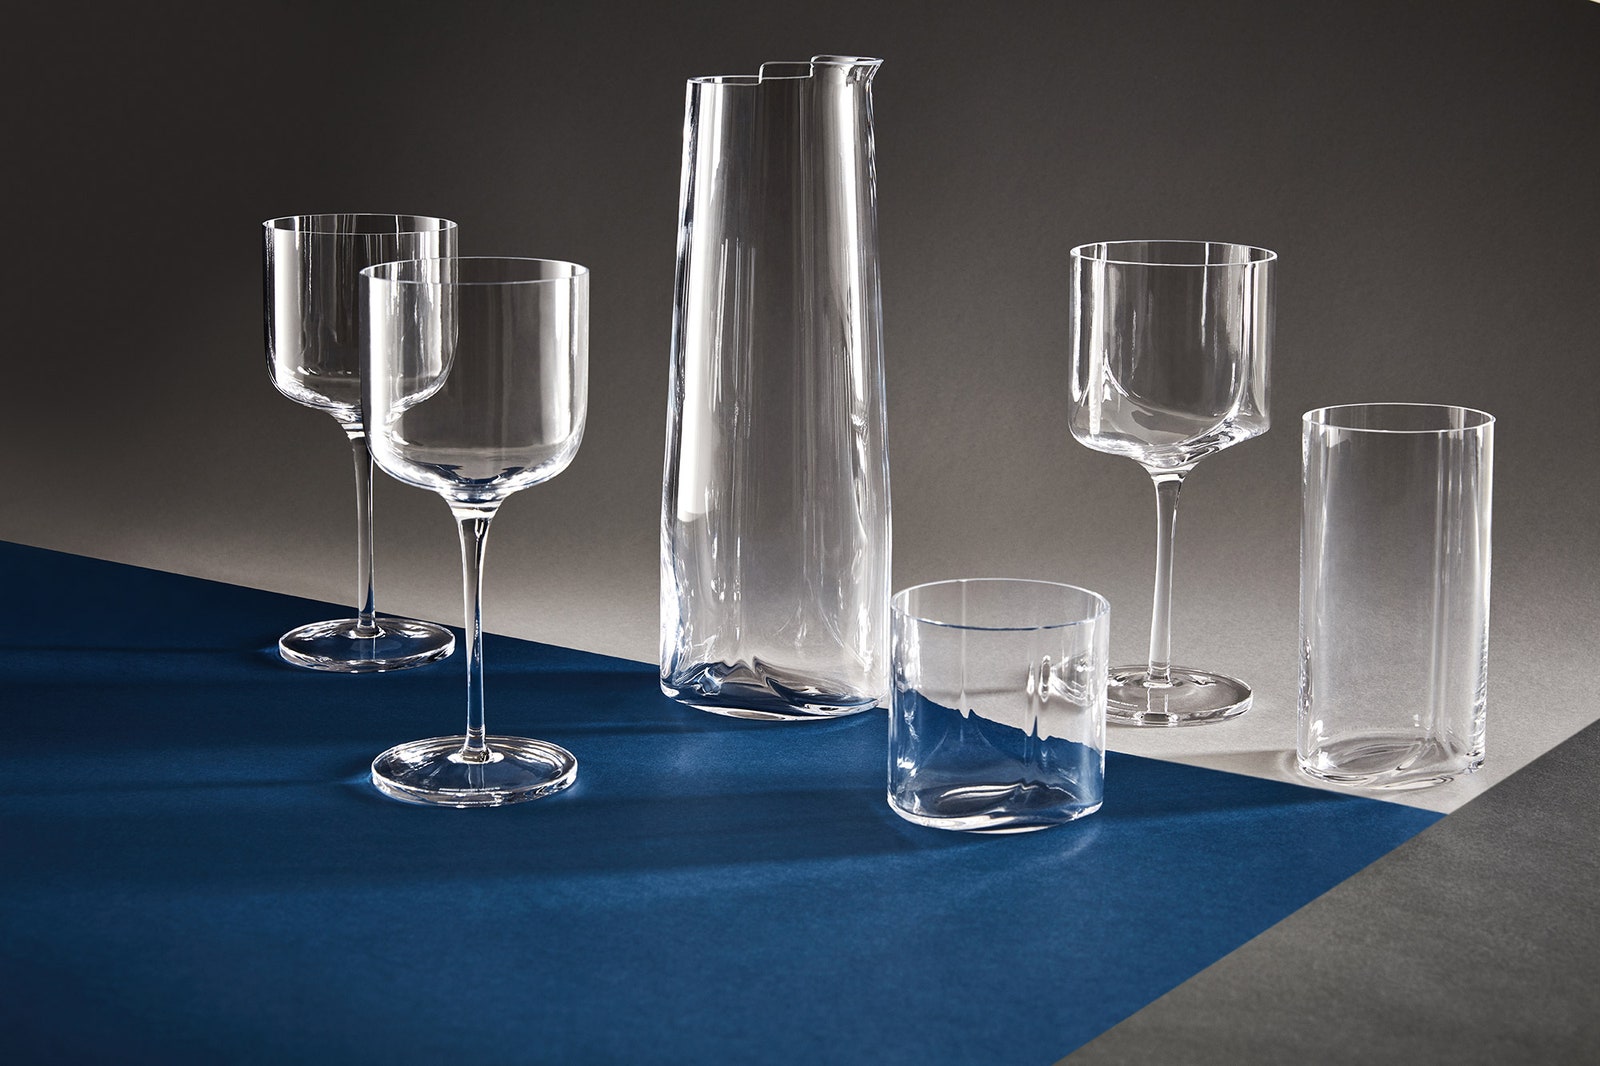 Неожиданное в обычном новая коллекция посуды от Zaha Hadid Design